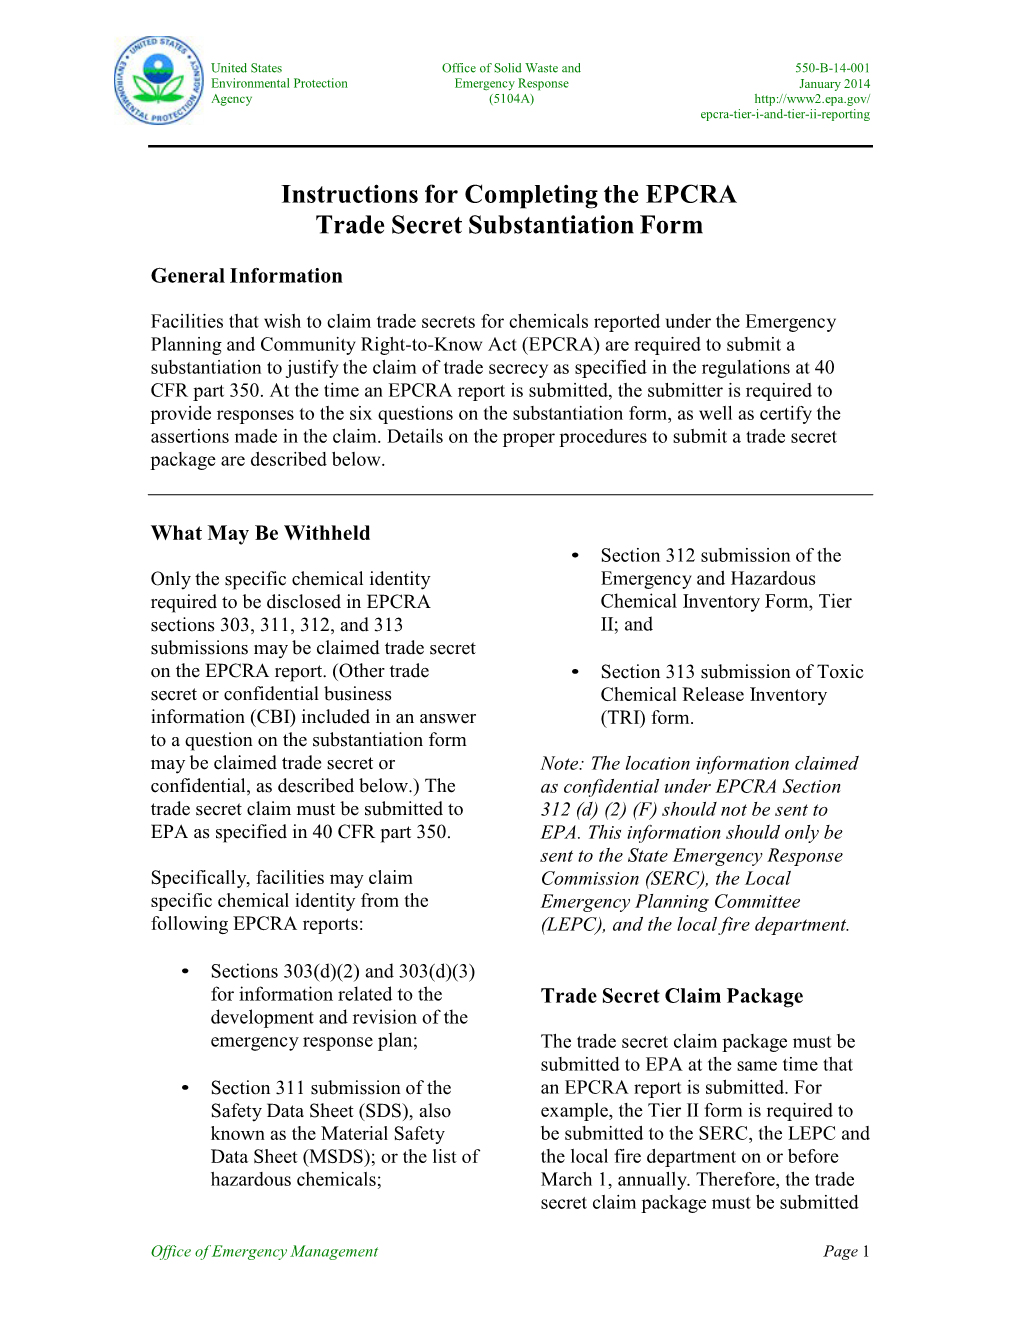 Instructions for Completing EPCRA Trade Secret Substantiation Form